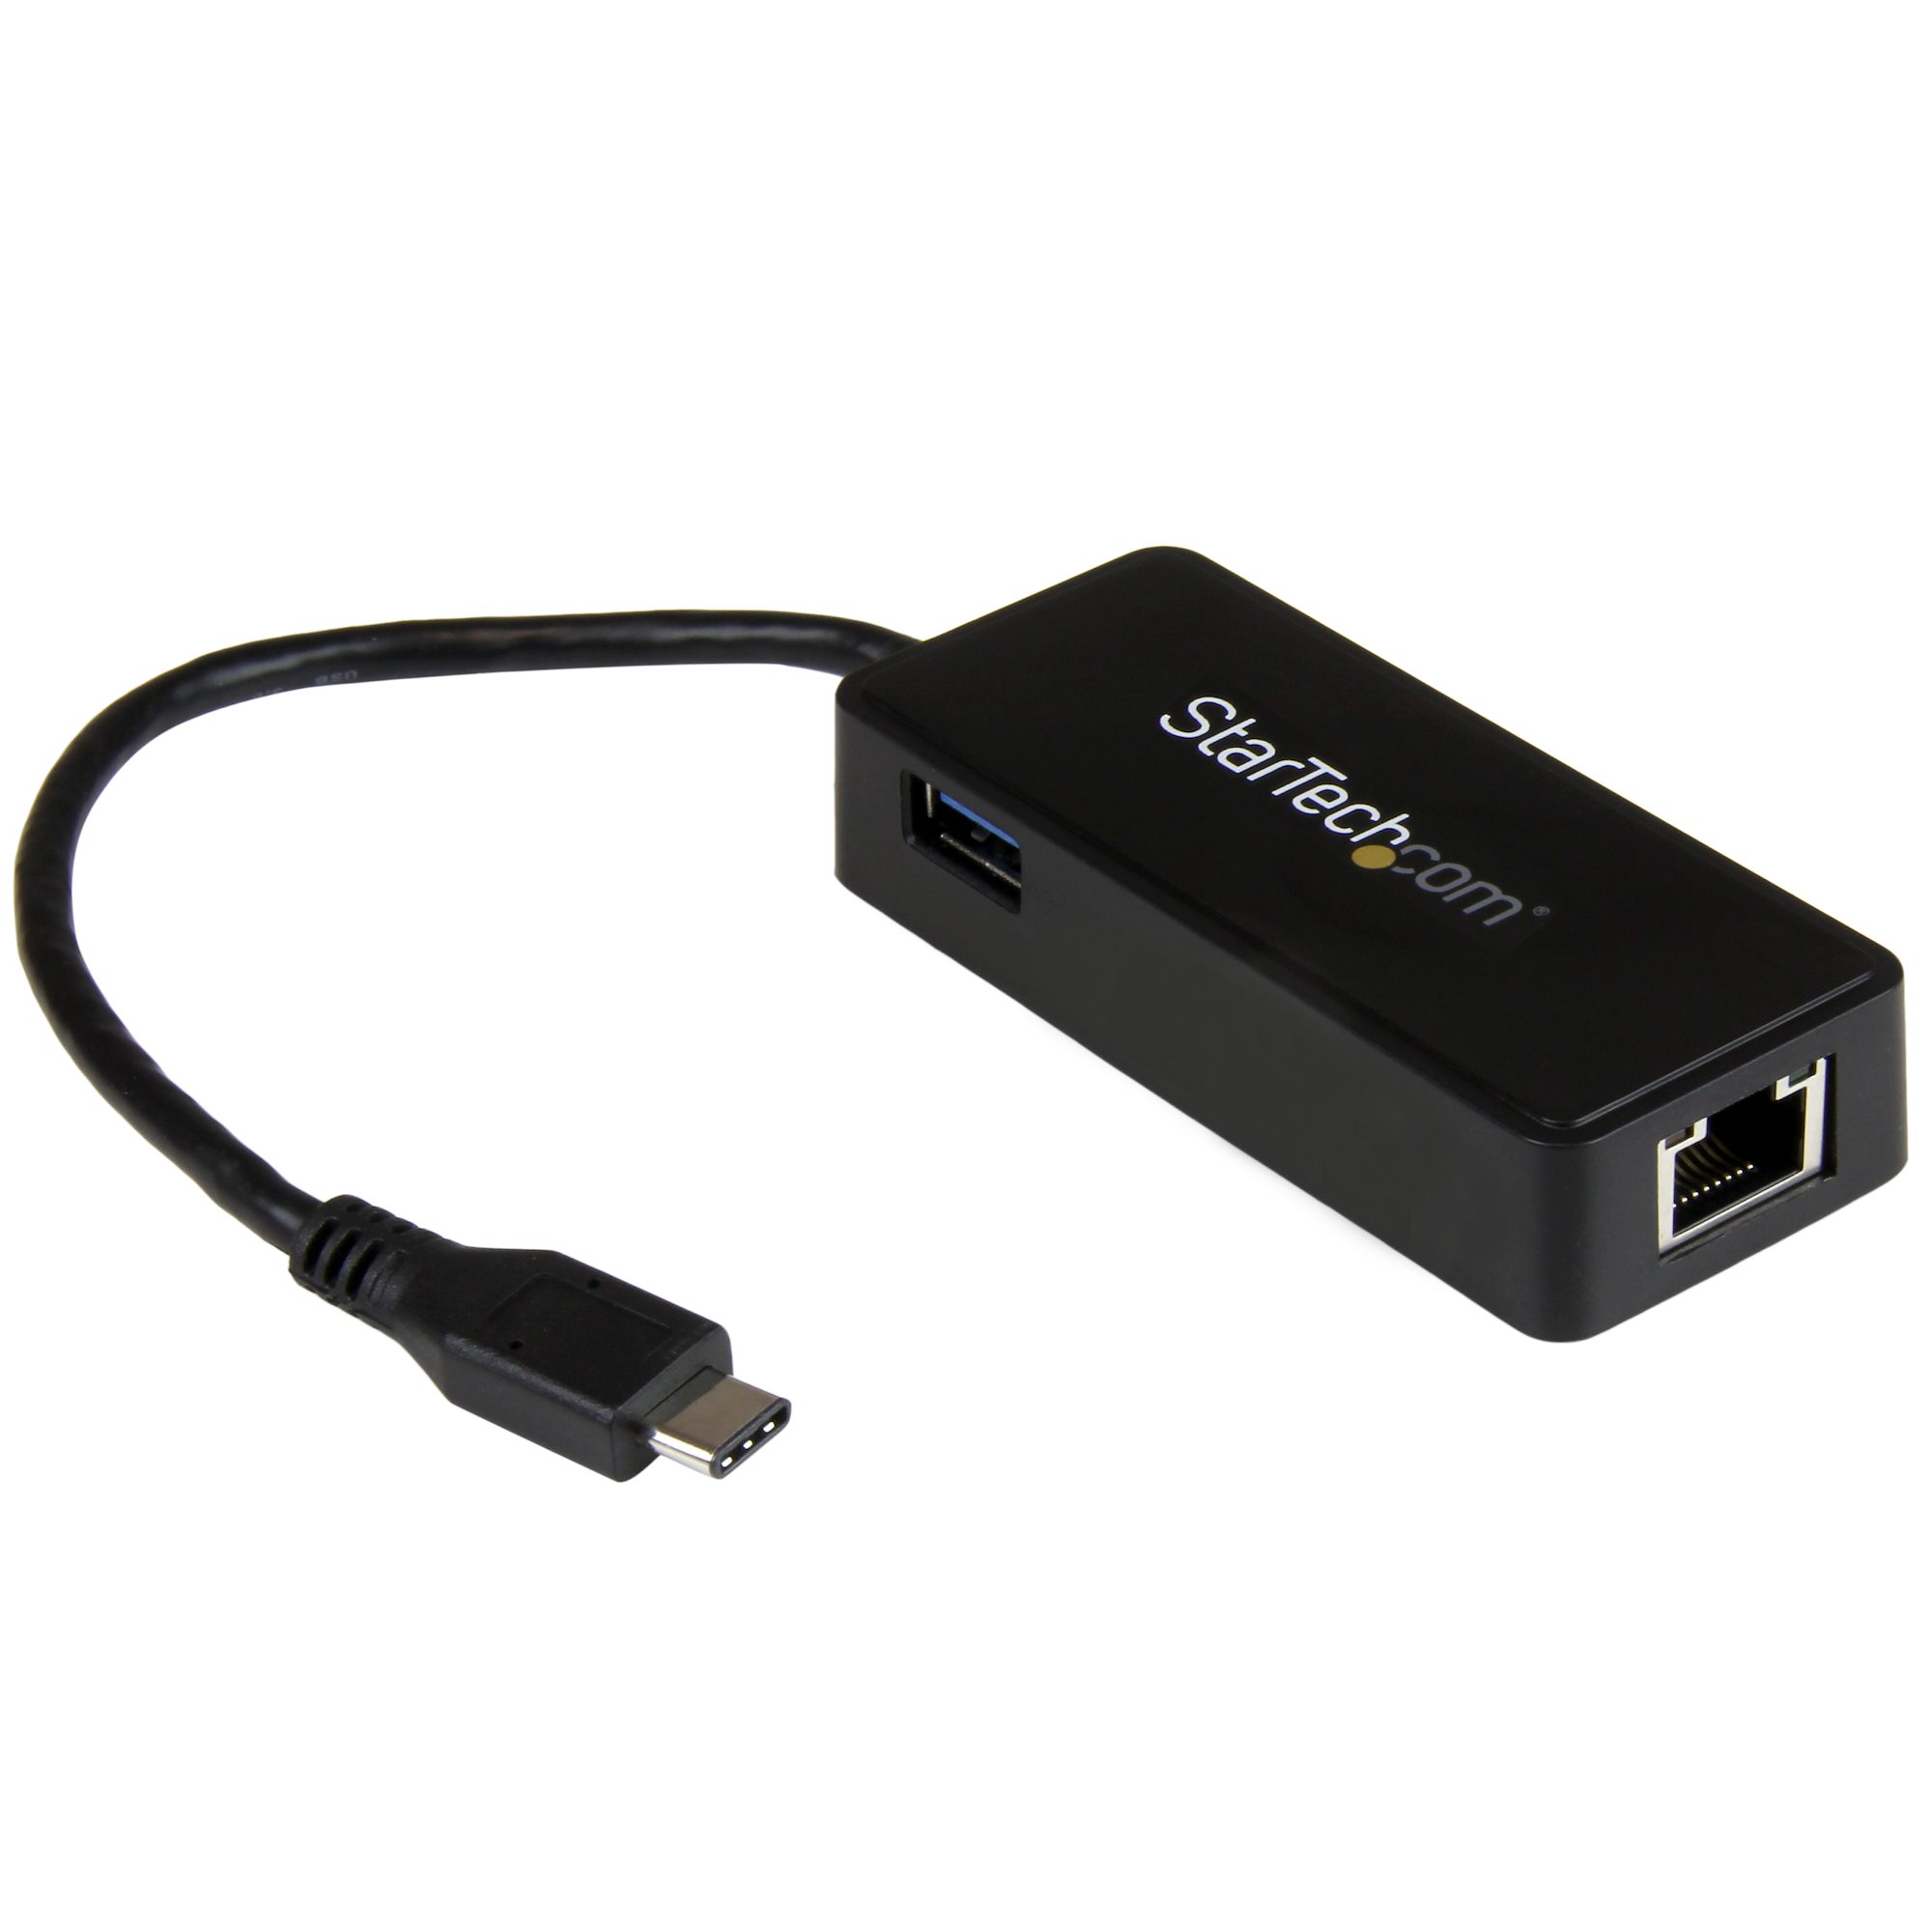 USB Type-C有線LANアダプタ ギガビット対応 USB 3.0ポート付き ブラック